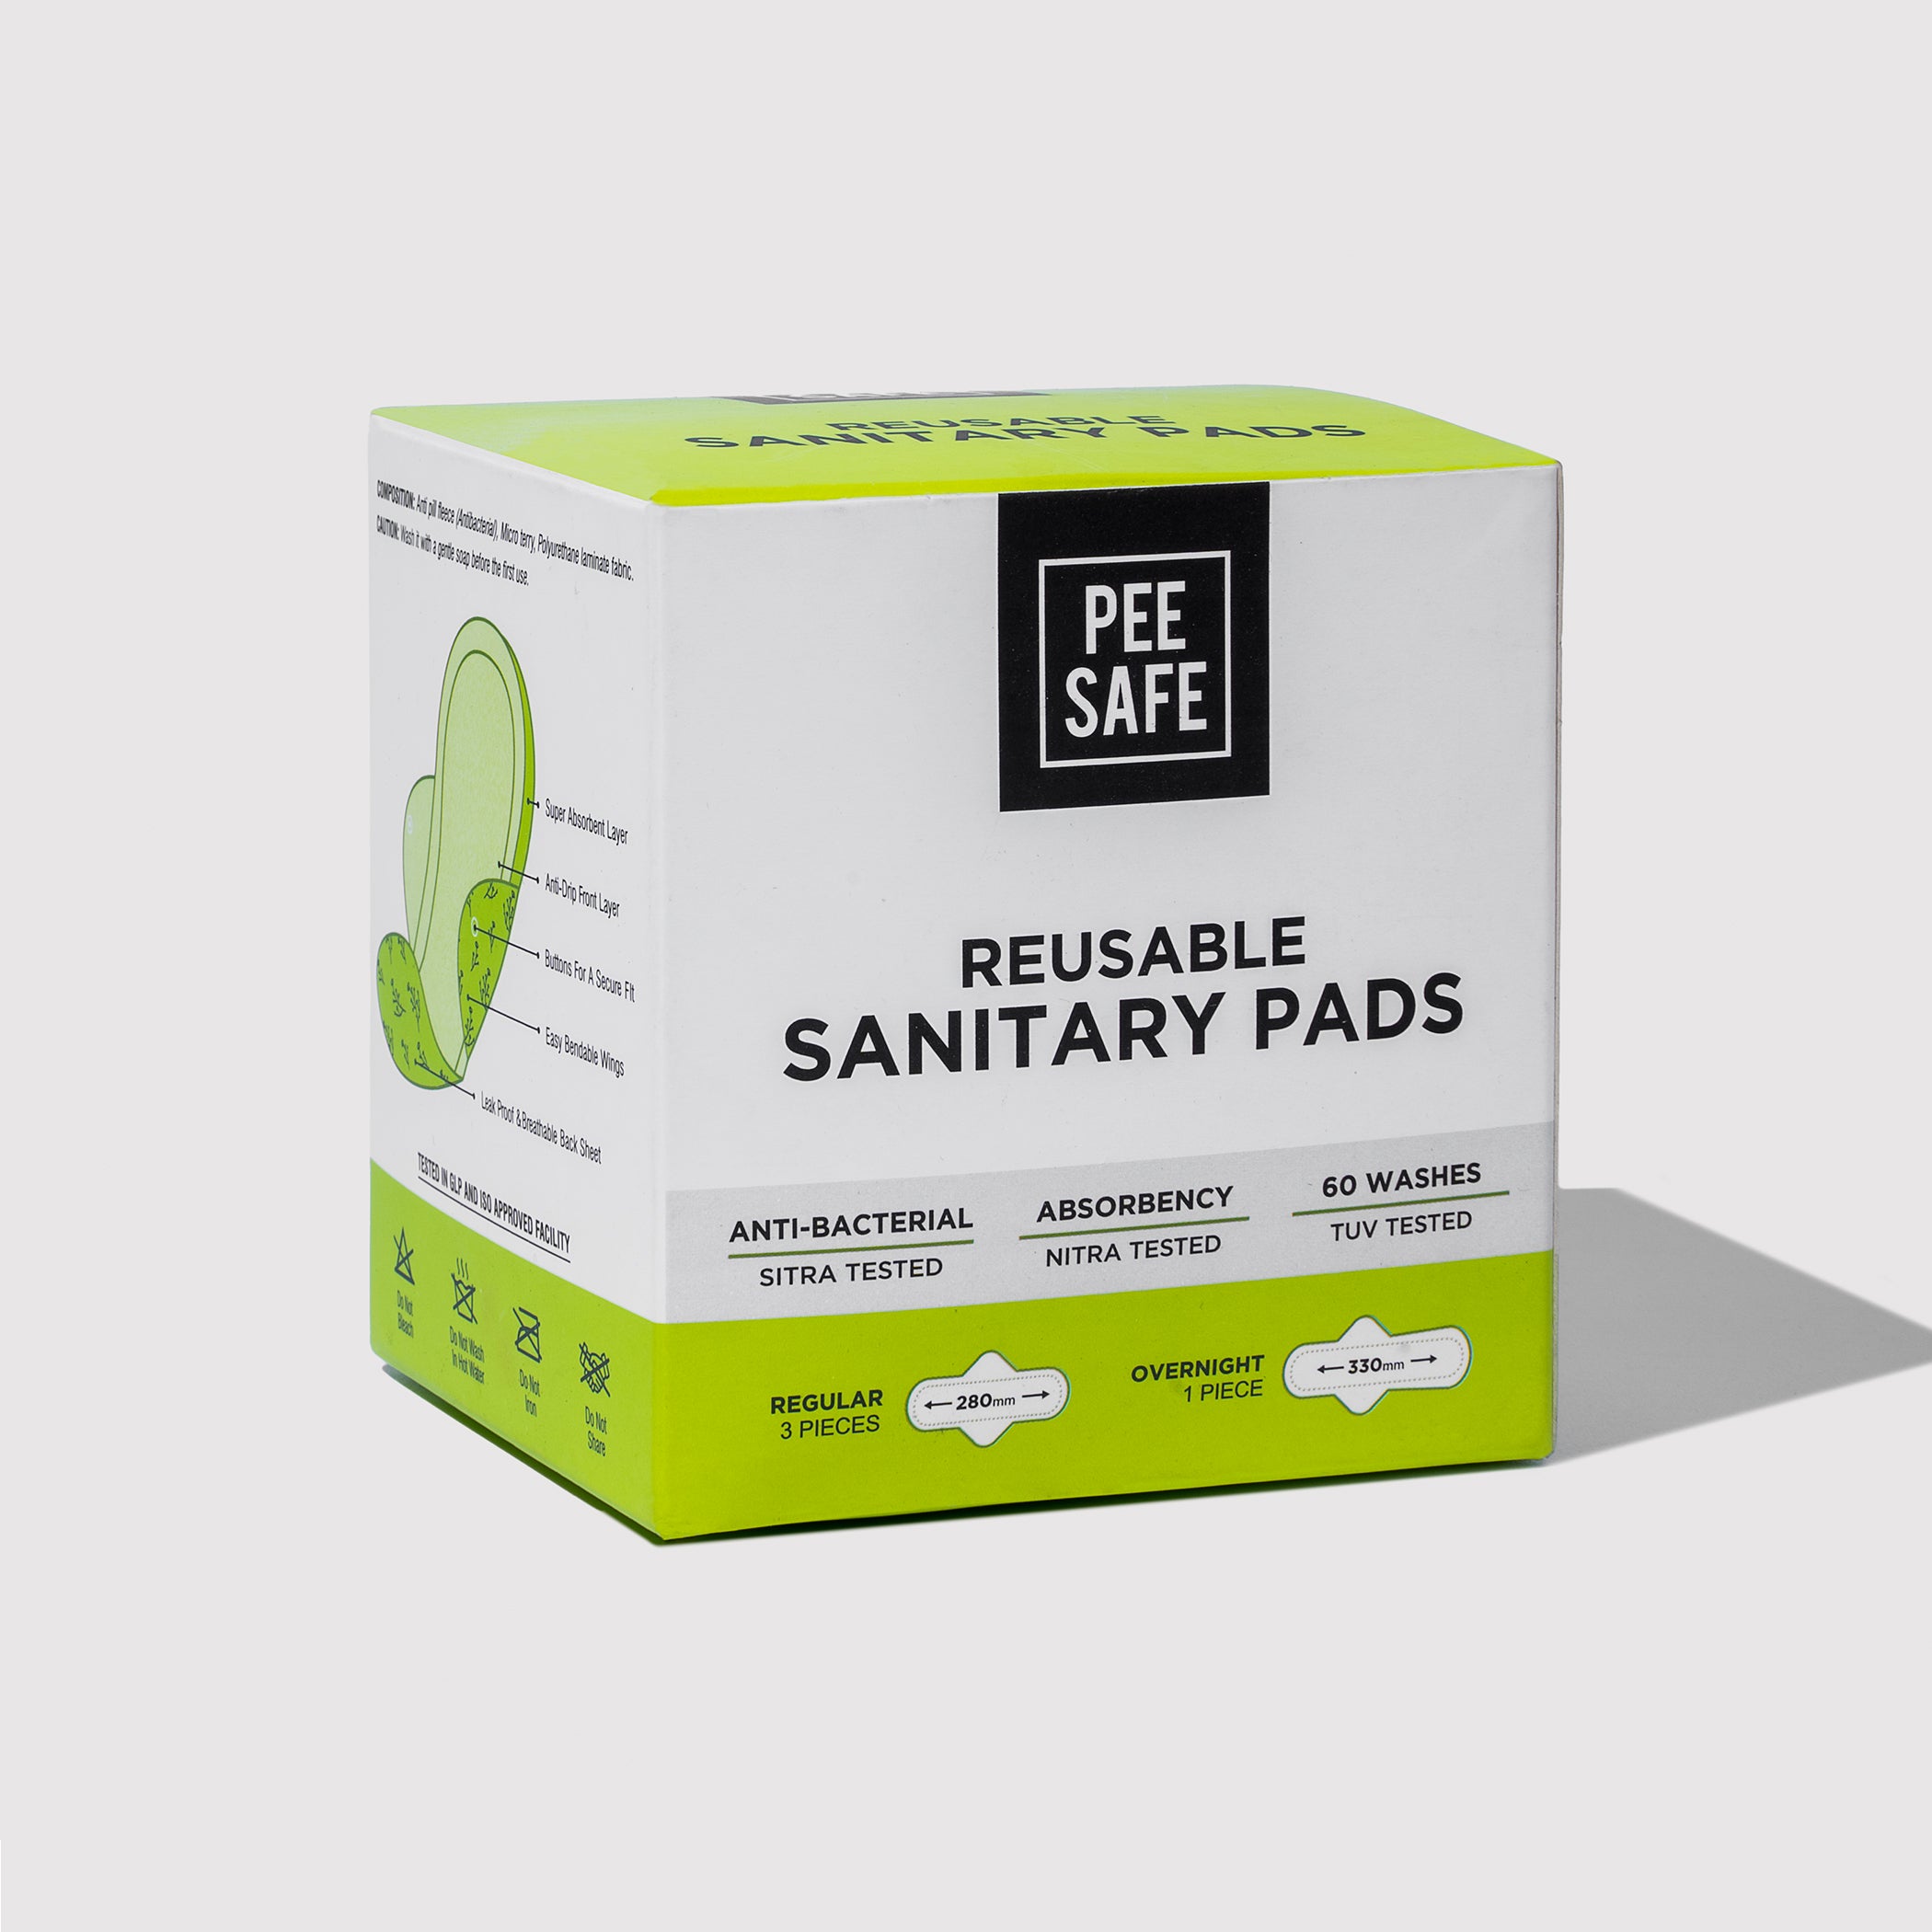 Pee Safe Reusable Sanitary Pads (6 Regular Pads + 2 Night Pads) - Pack of 2